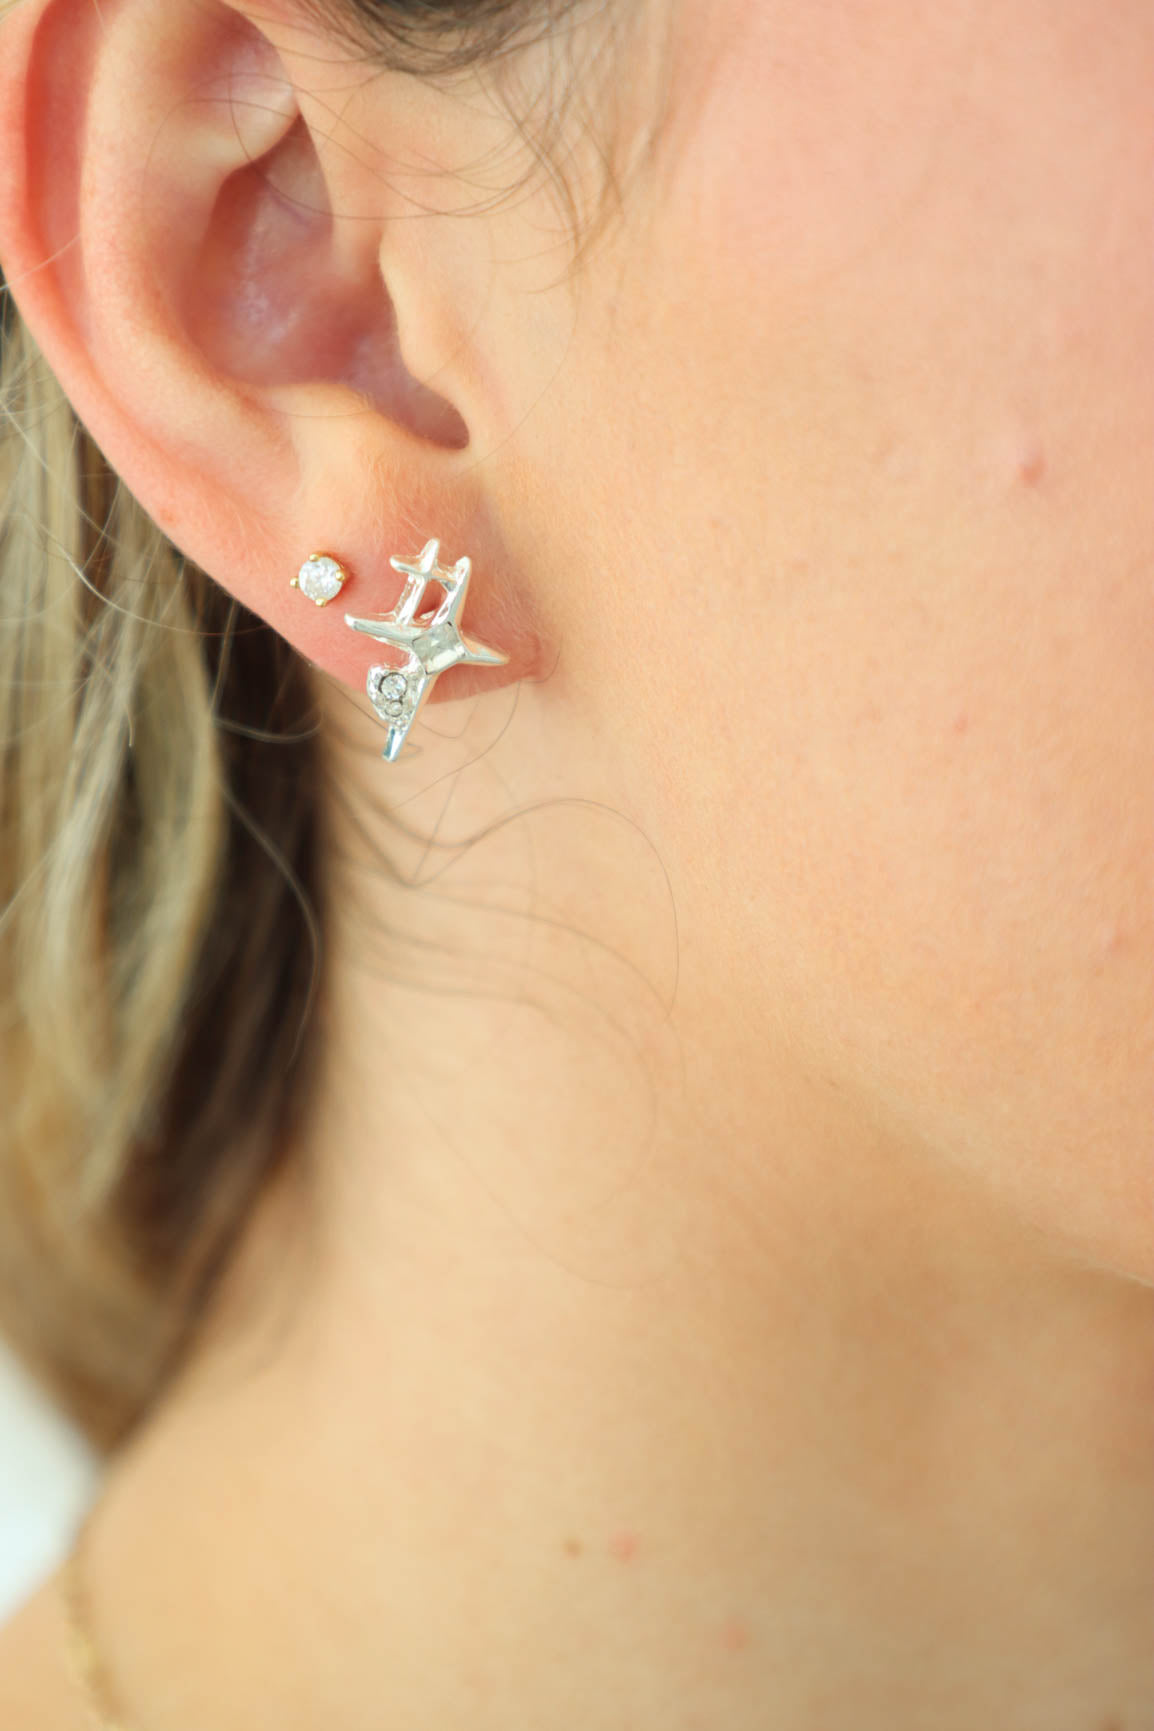 girl wearing silver star earrings